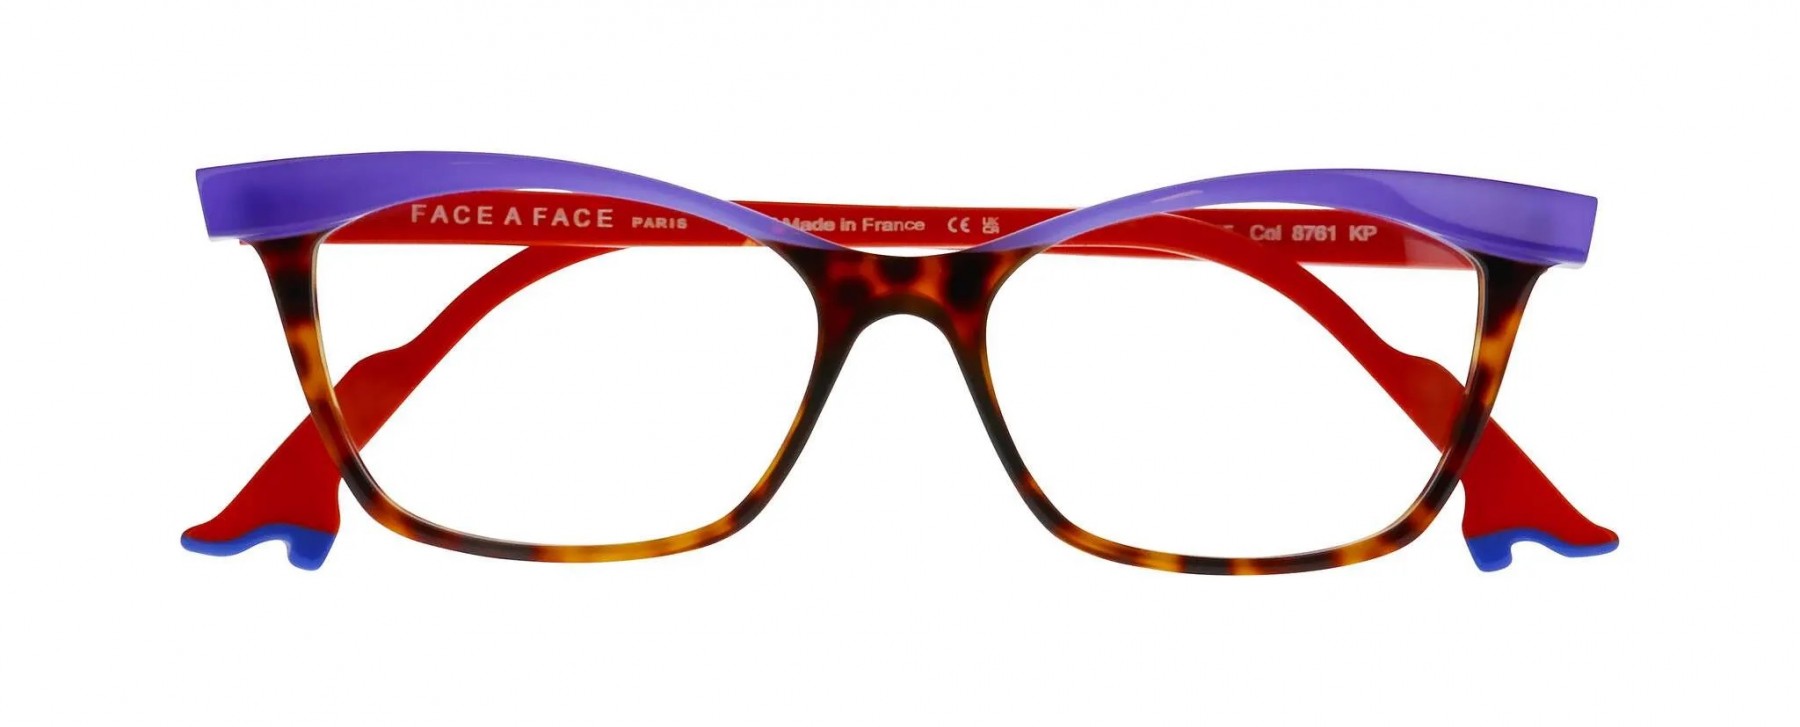 Face a Face Bocca Kahlo 2 8761 - Oculos de Grau